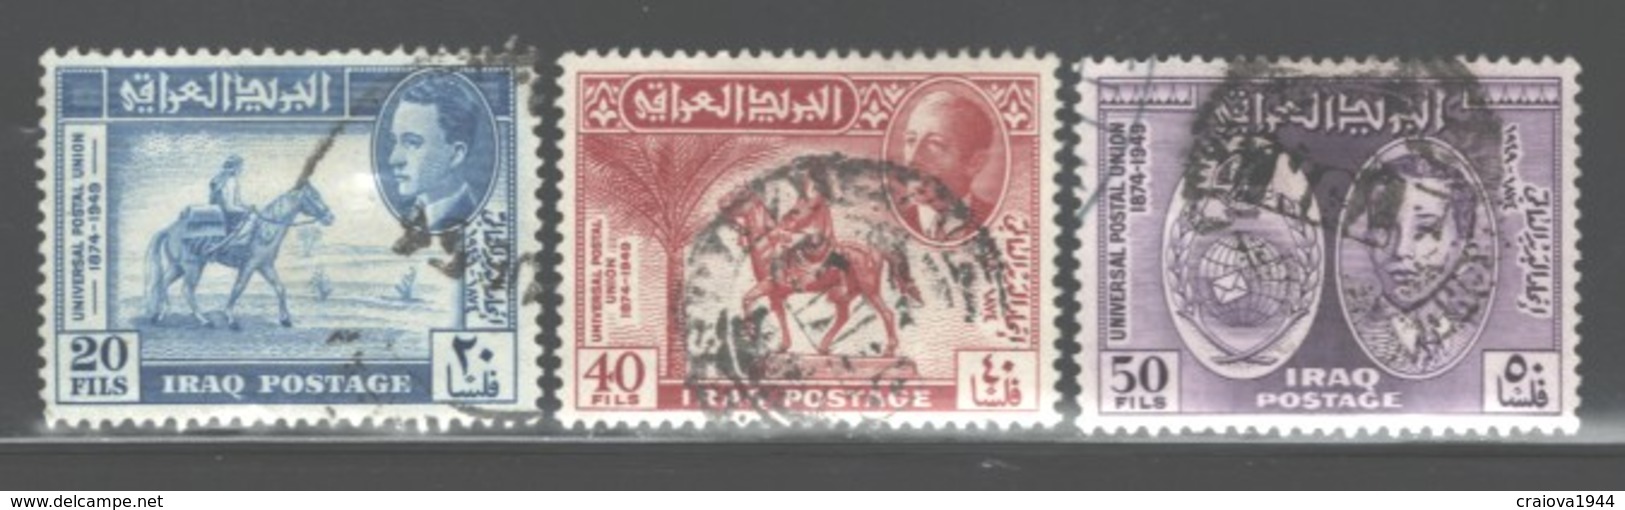 IRAK 1949 "UPU 75th ANNIVERSARY", #130 - 132USED C.V. $11.00 - Irak